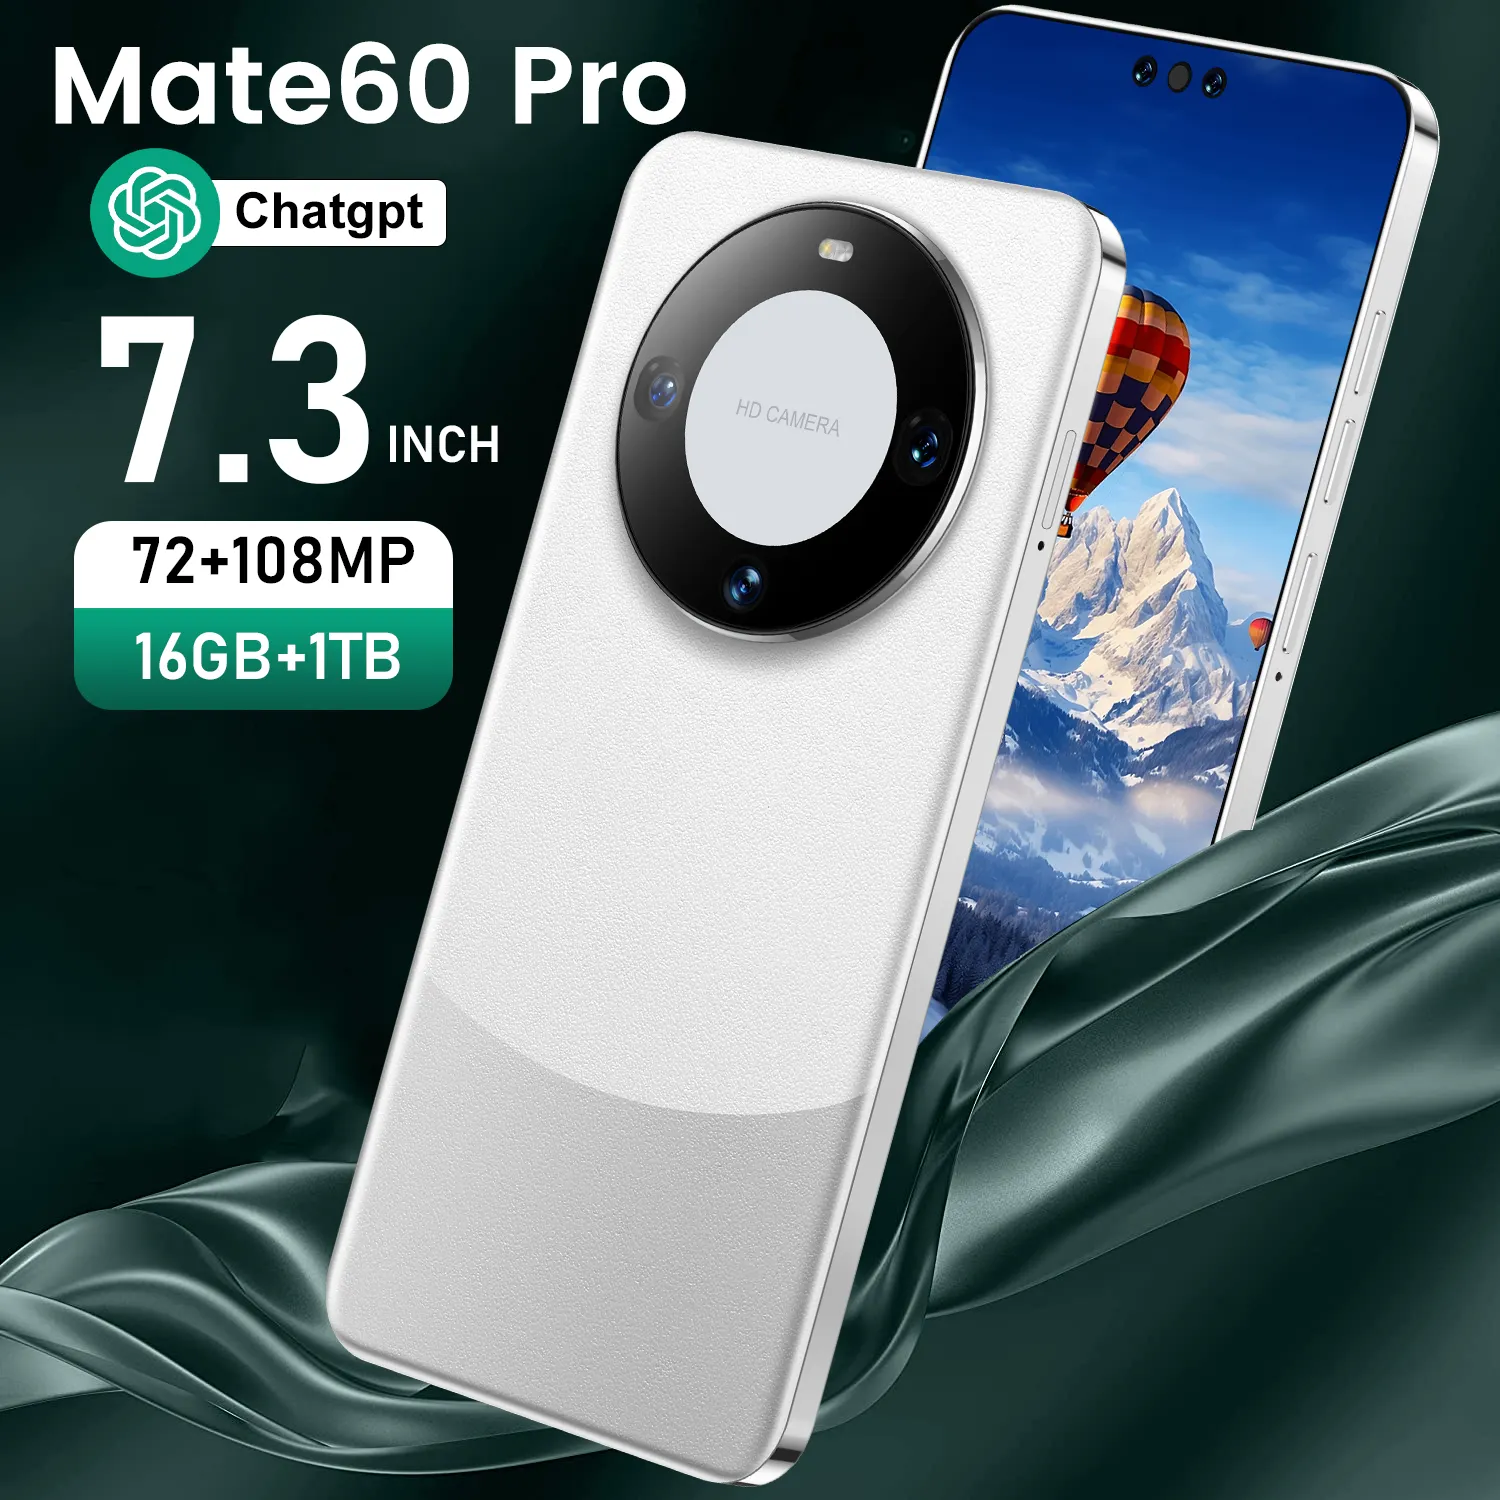 هاتف Mate 60 pro الذكي بسعر المصنع مباشرةً، هاتف محمول جديد رخيص عالي الجودة بكاميرا جمالية عالية الدقة